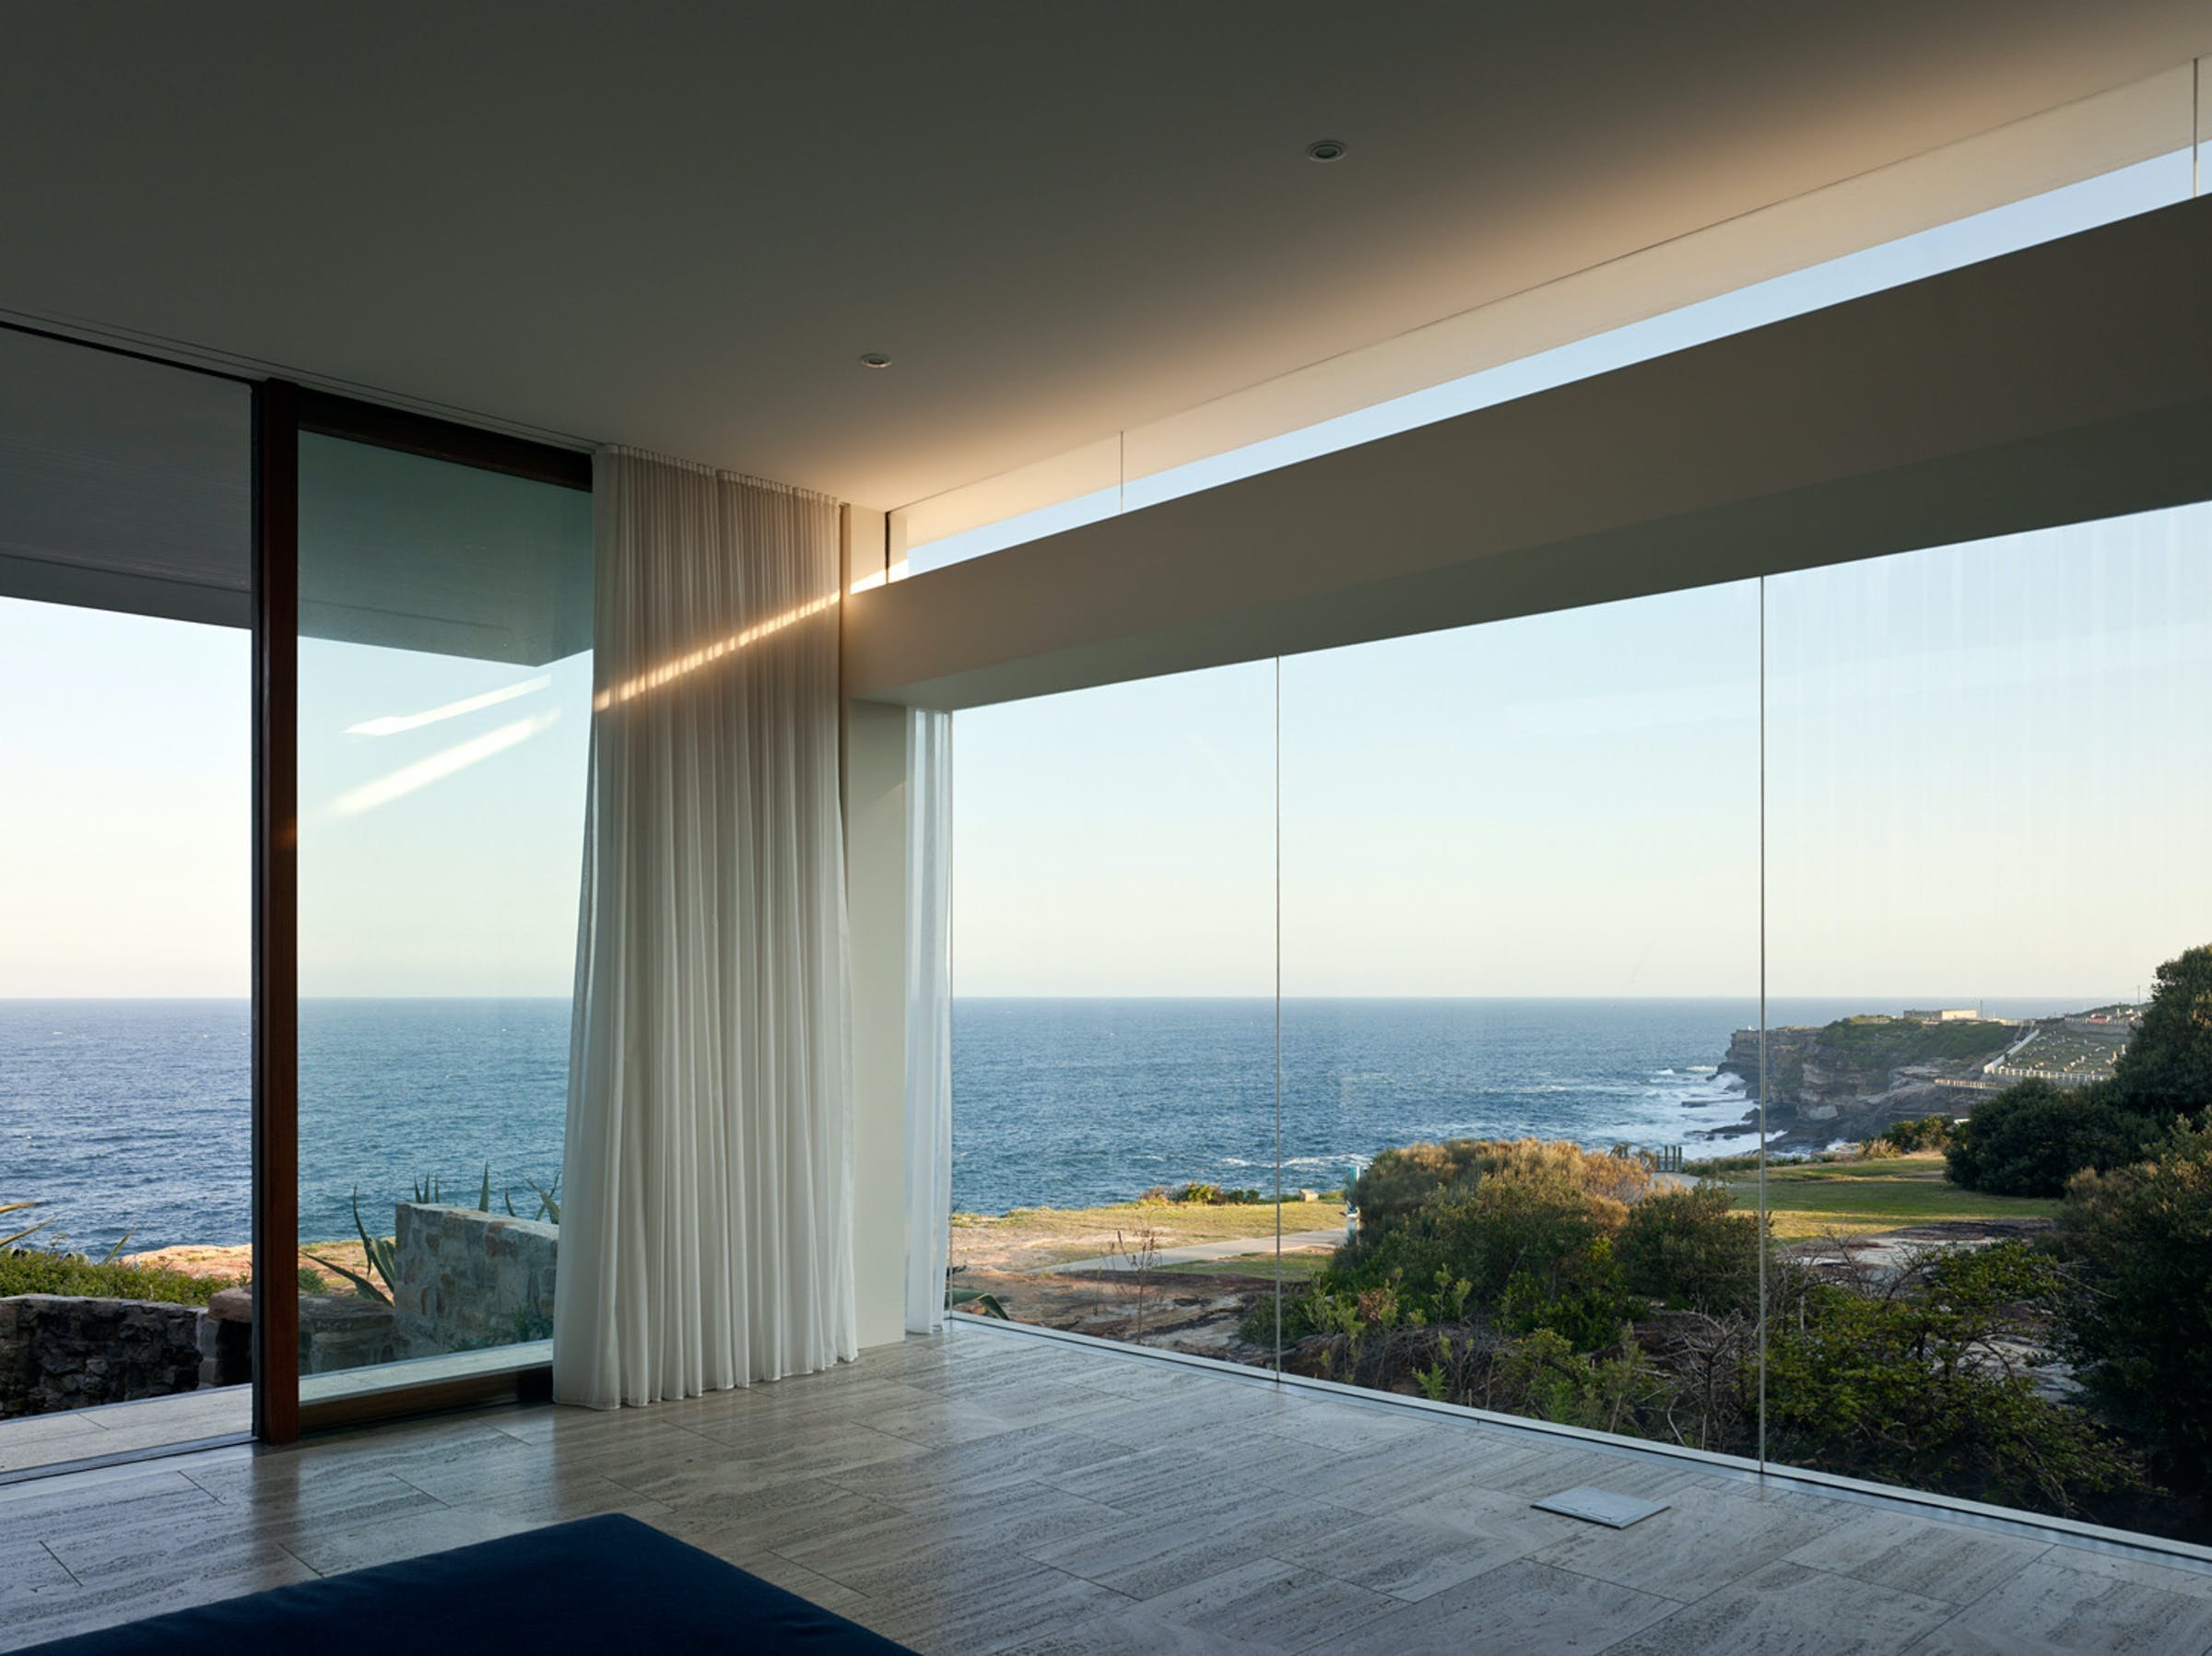 Панорамный. Панорамный вид из окна. Панорамные окна с видом на море. Вилла с панорамными окнами с видом на океан. Панорамный вид на океан.